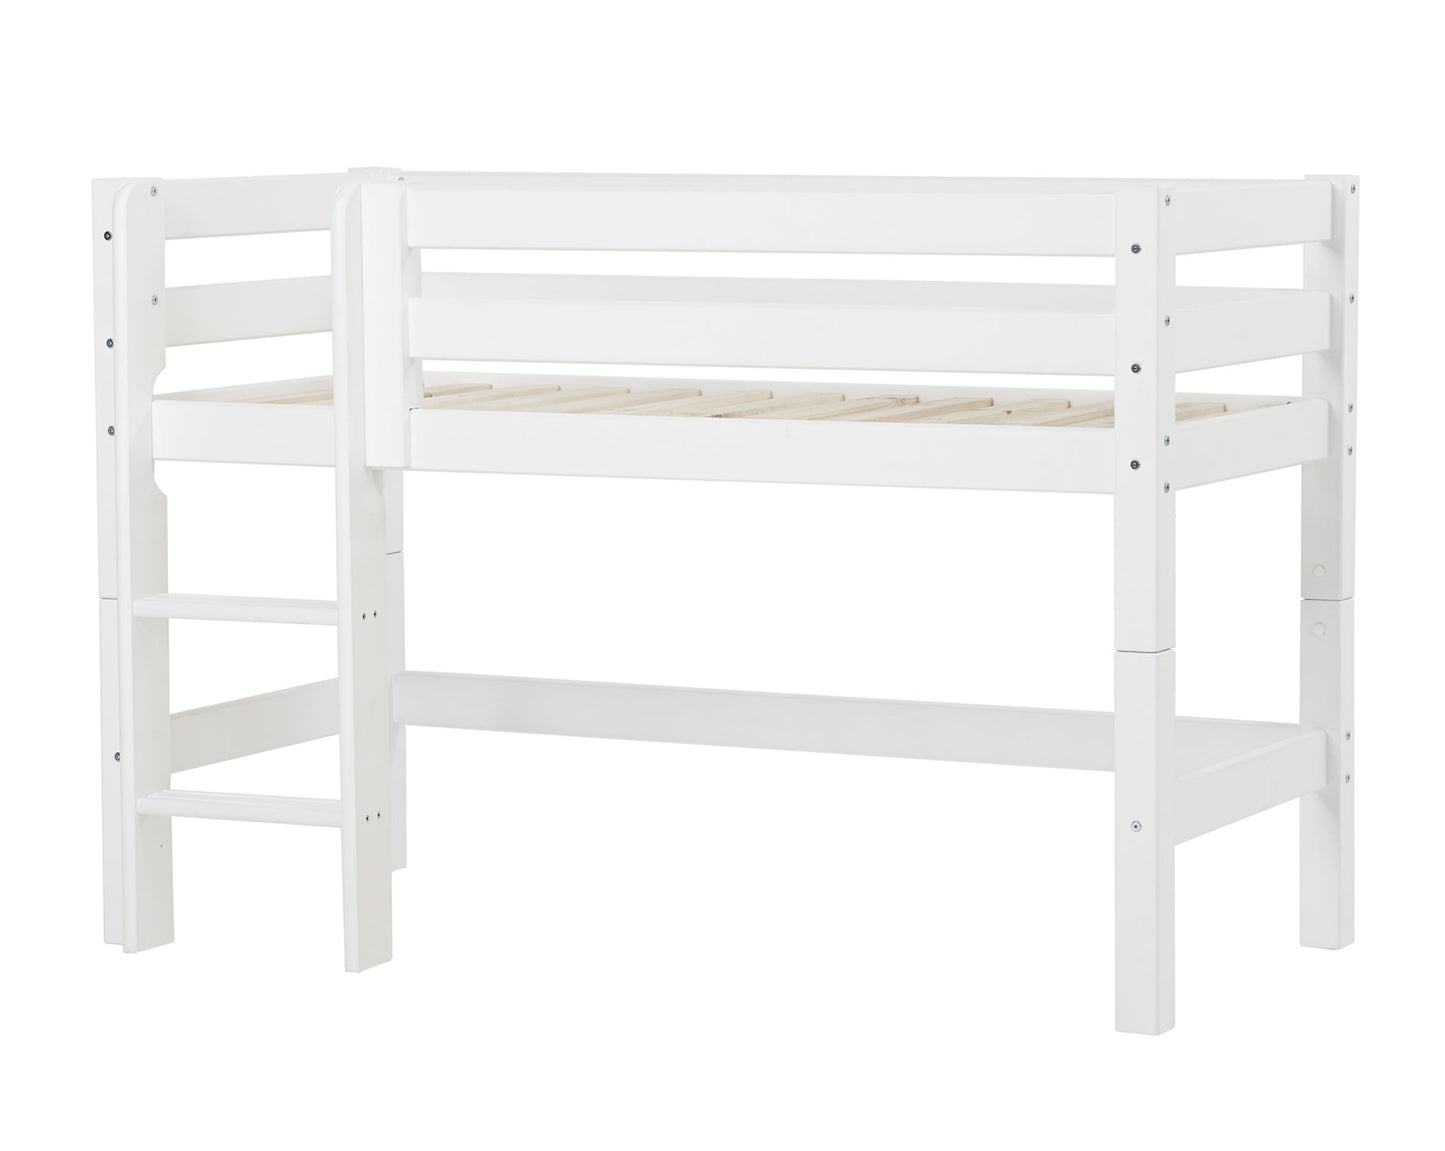 ECO Luxury - Moduuli puolikorkealle sängylle - 70x160 cm - valkoinen